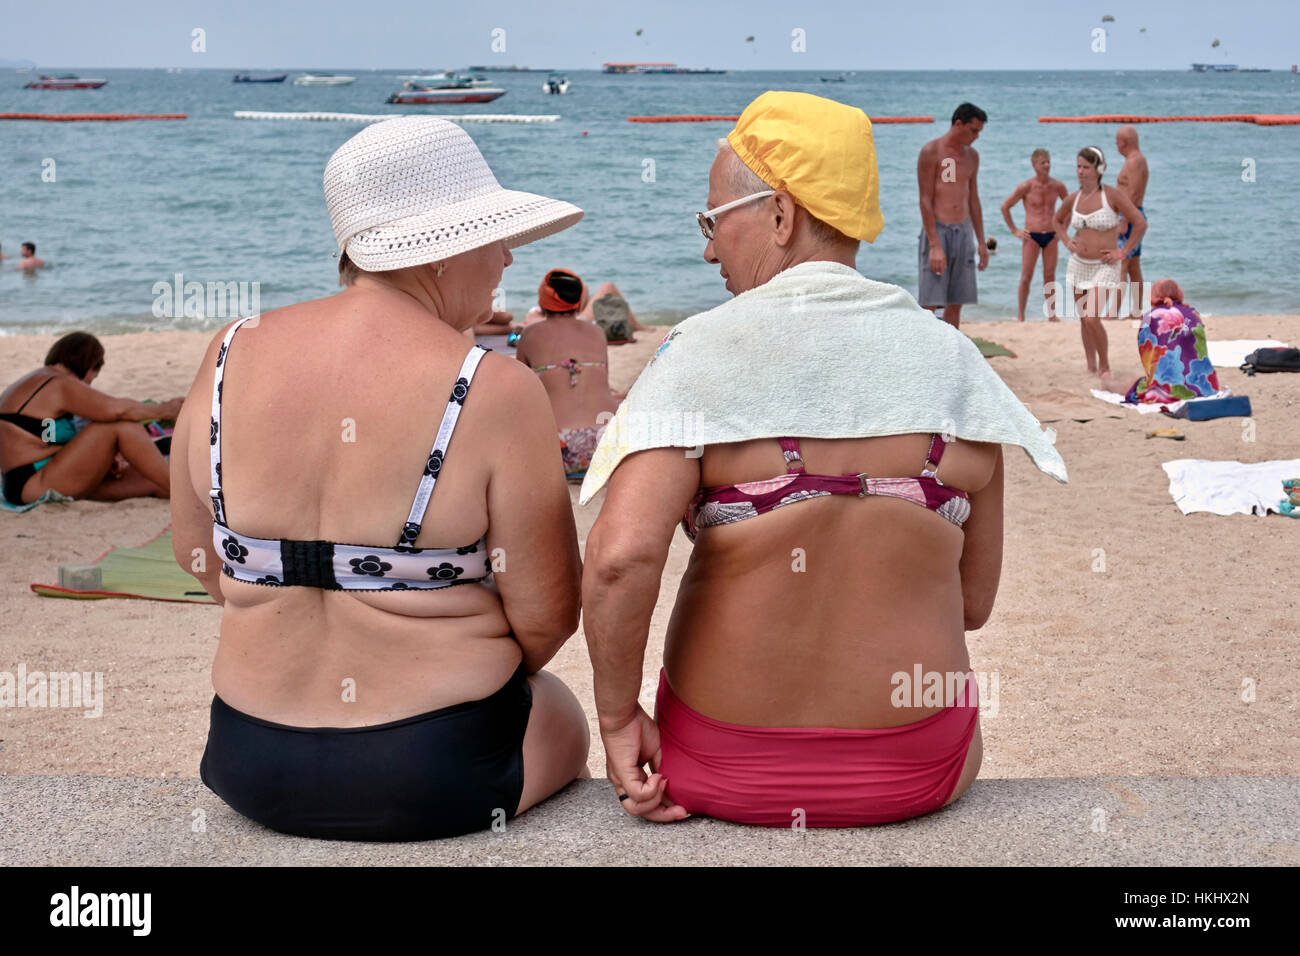 Amüsante Bild erinnert an die 1950er Jahre UK Postkarten mit zwei ältere Damen am Meer. Stockfoto